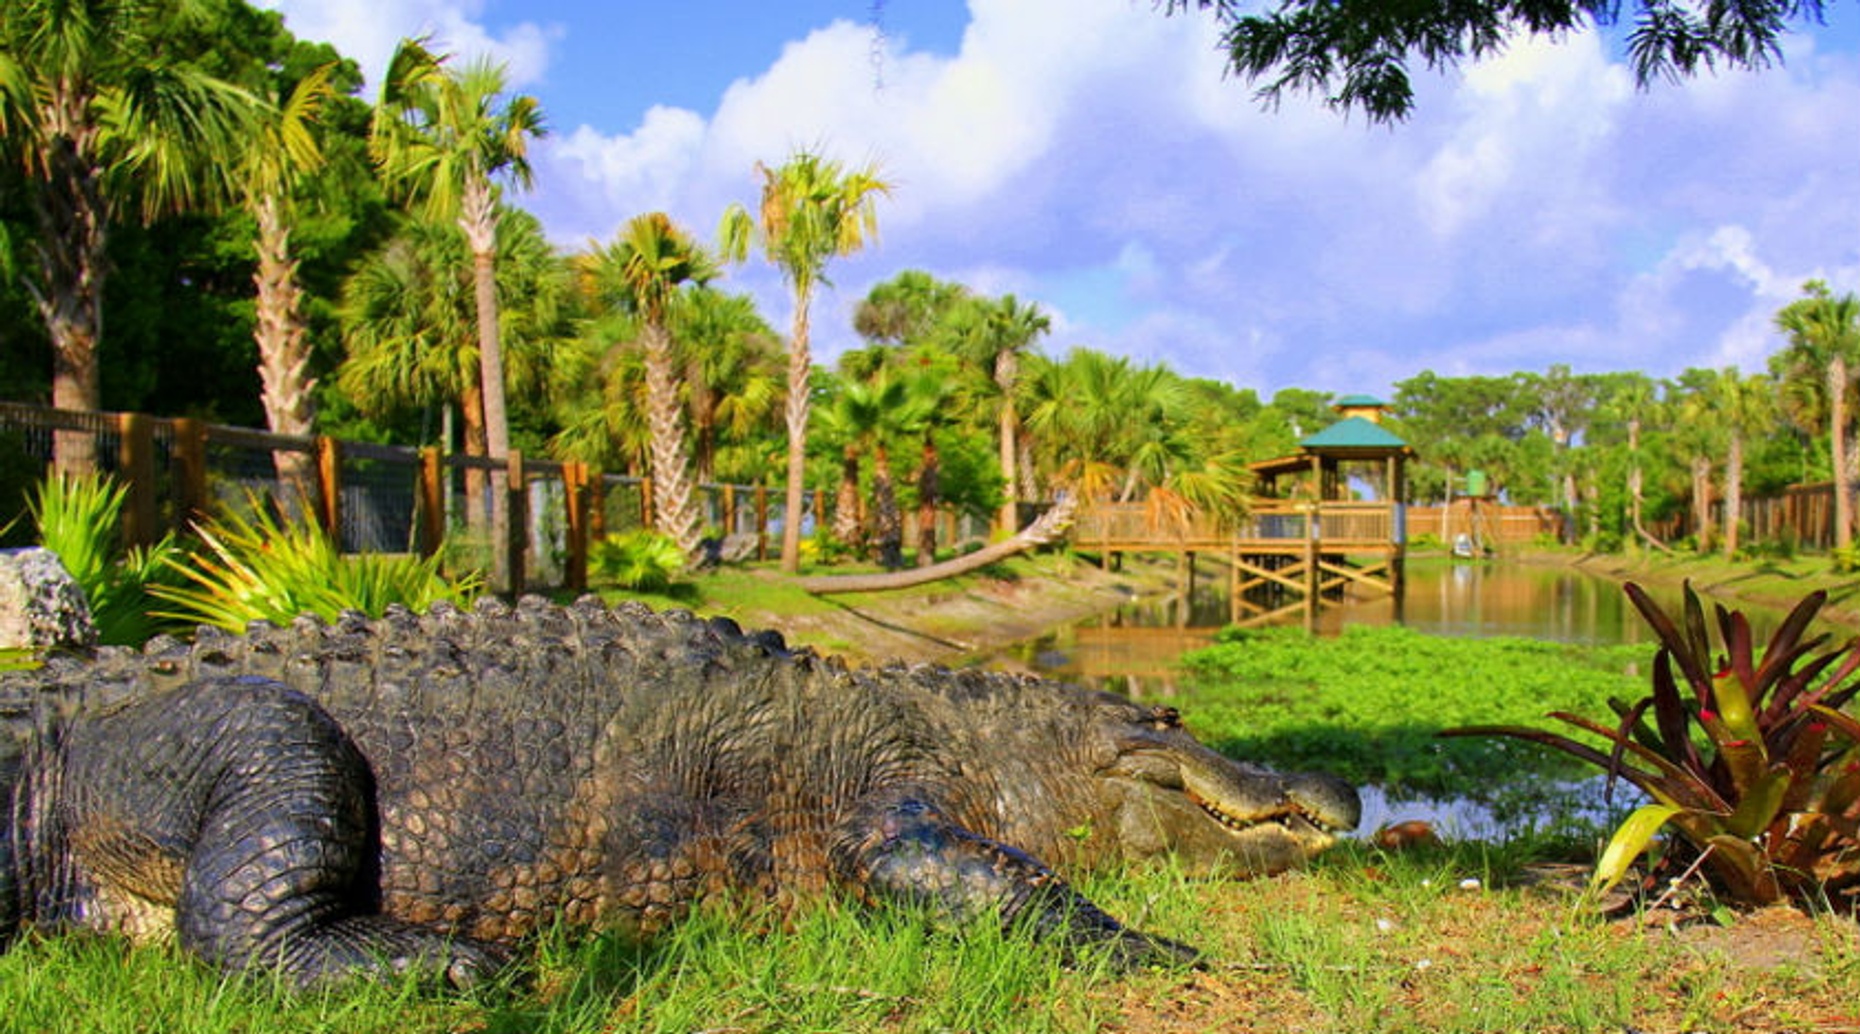 Everglades Wildlife Park Admission